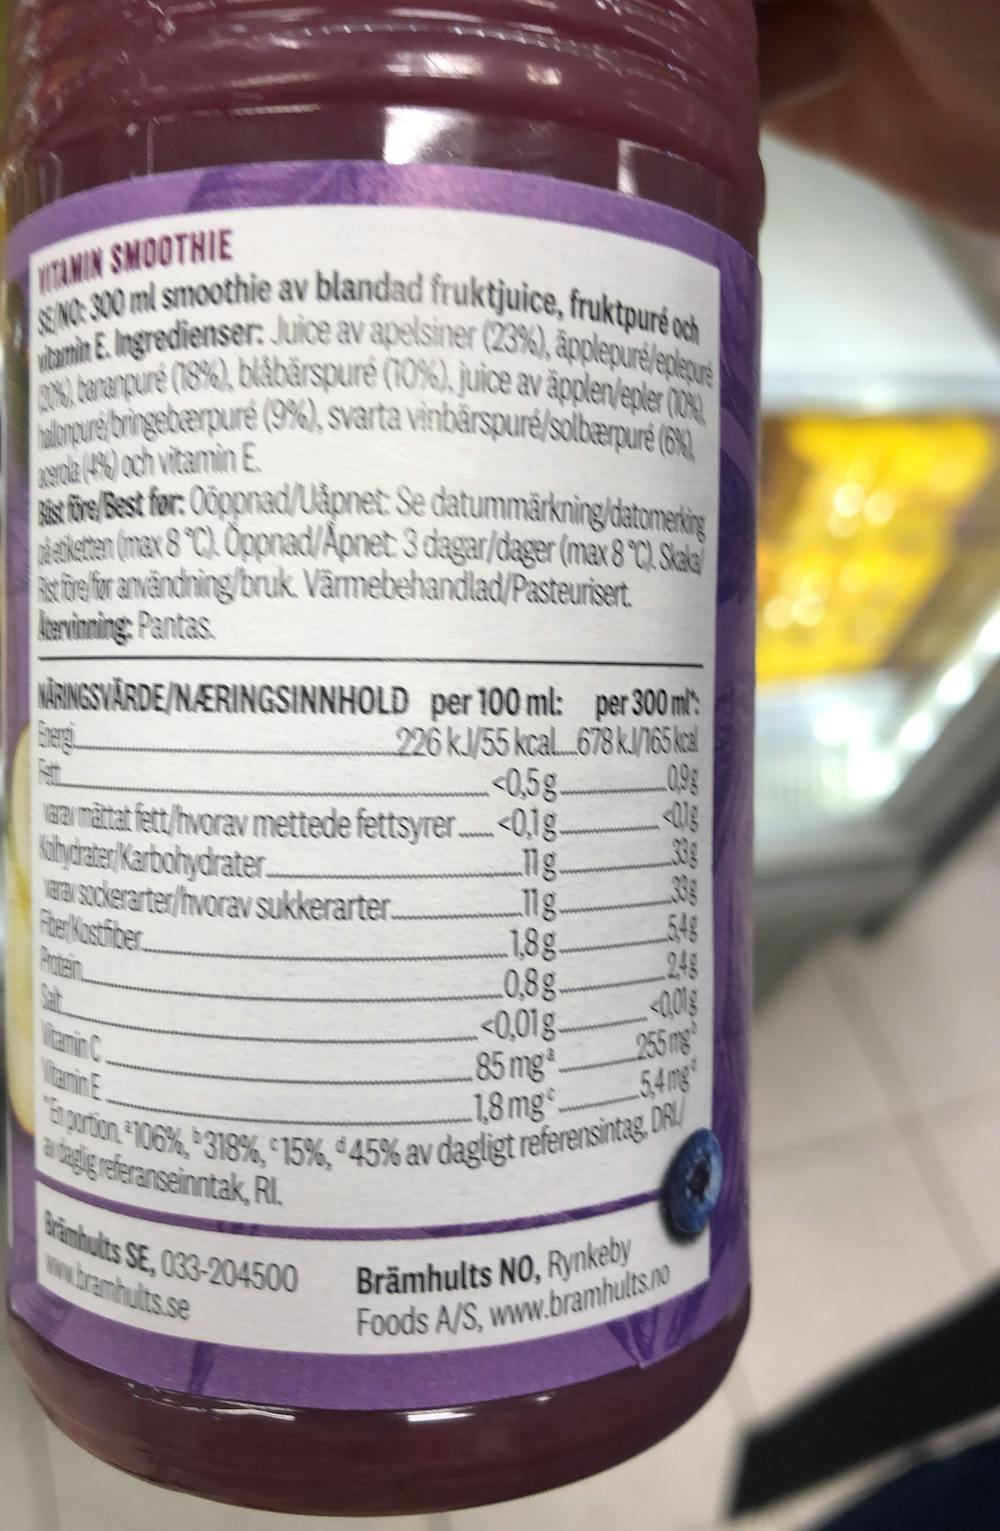 Ingrediensliste - Vitaminsmoothie, Brämhults